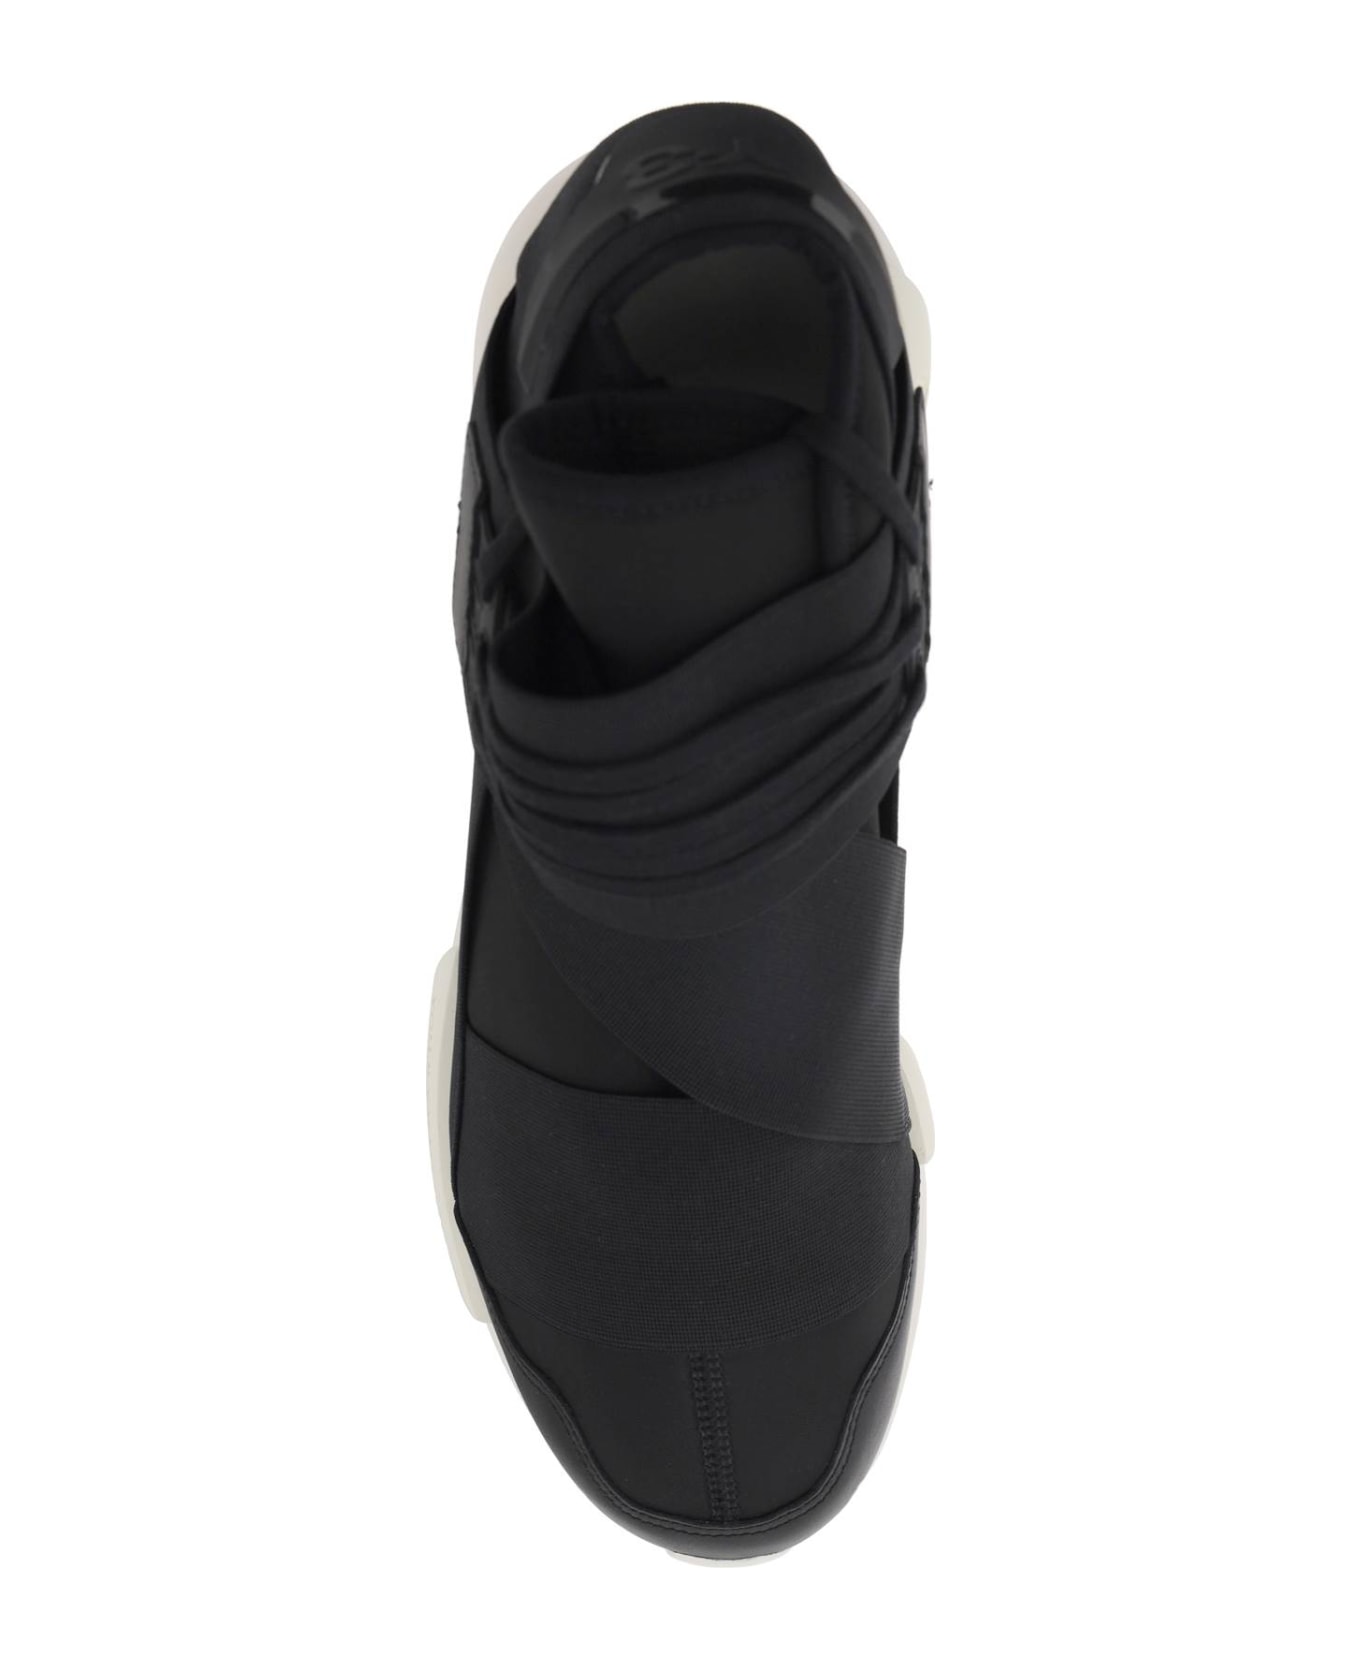 Y-3 Black And Off White Qasa Sneakers - BLACKBLACKOWHITE スニーカー